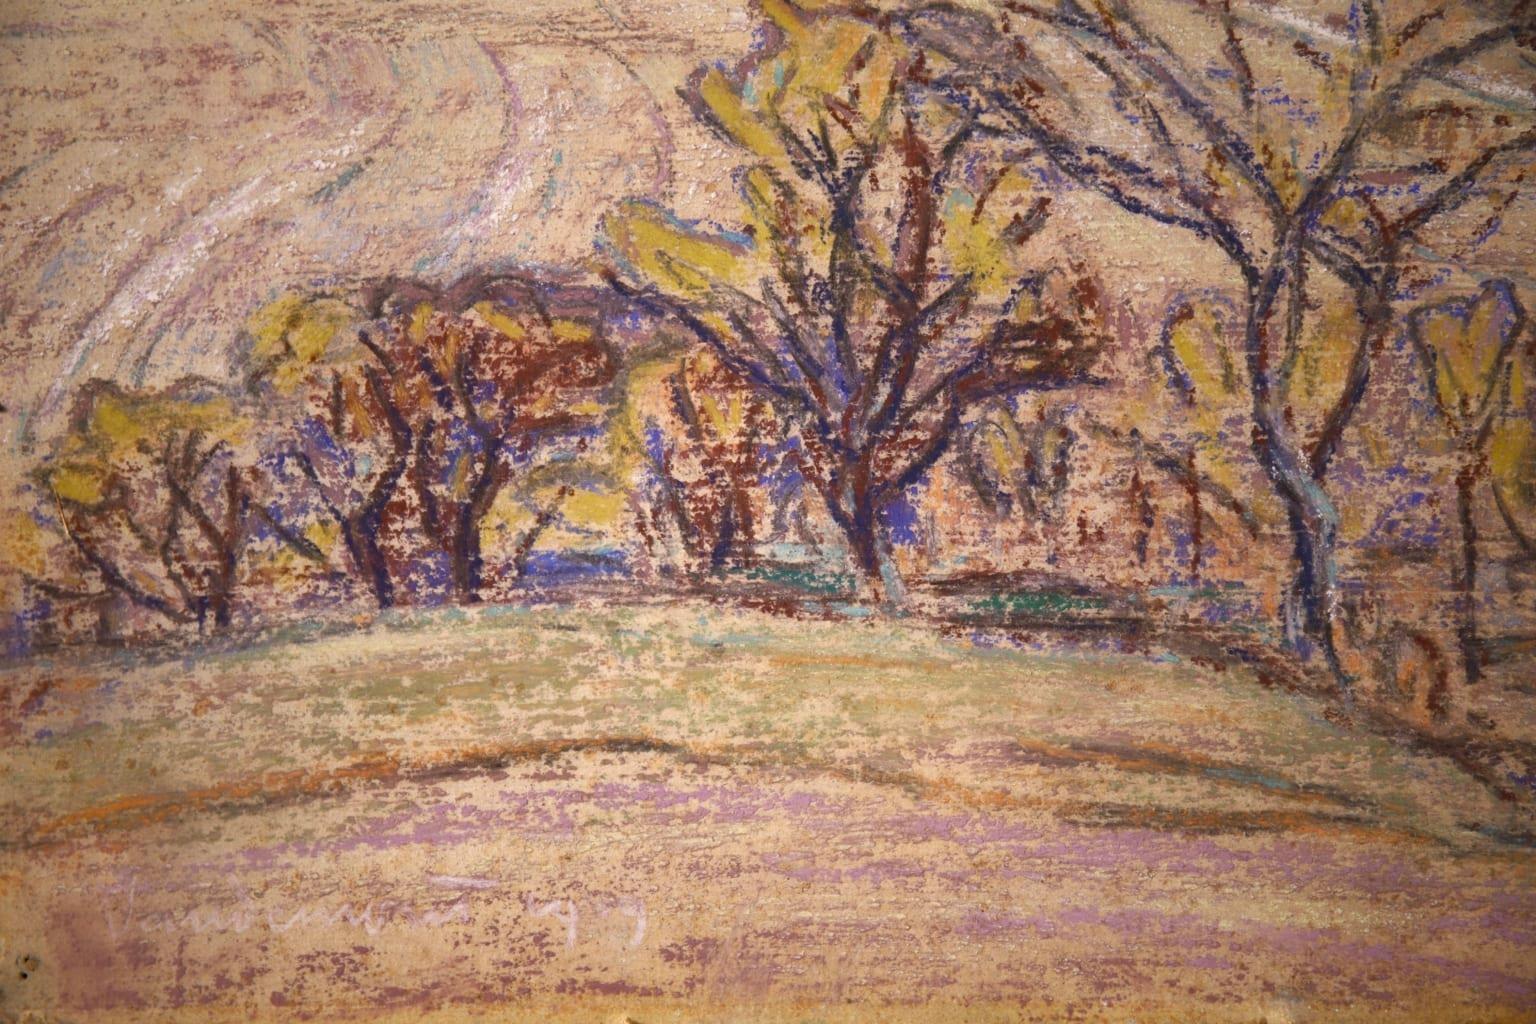 Paysage au Vaudemont - Impressionist Landscape Pastel by Armand Guillaumin 1